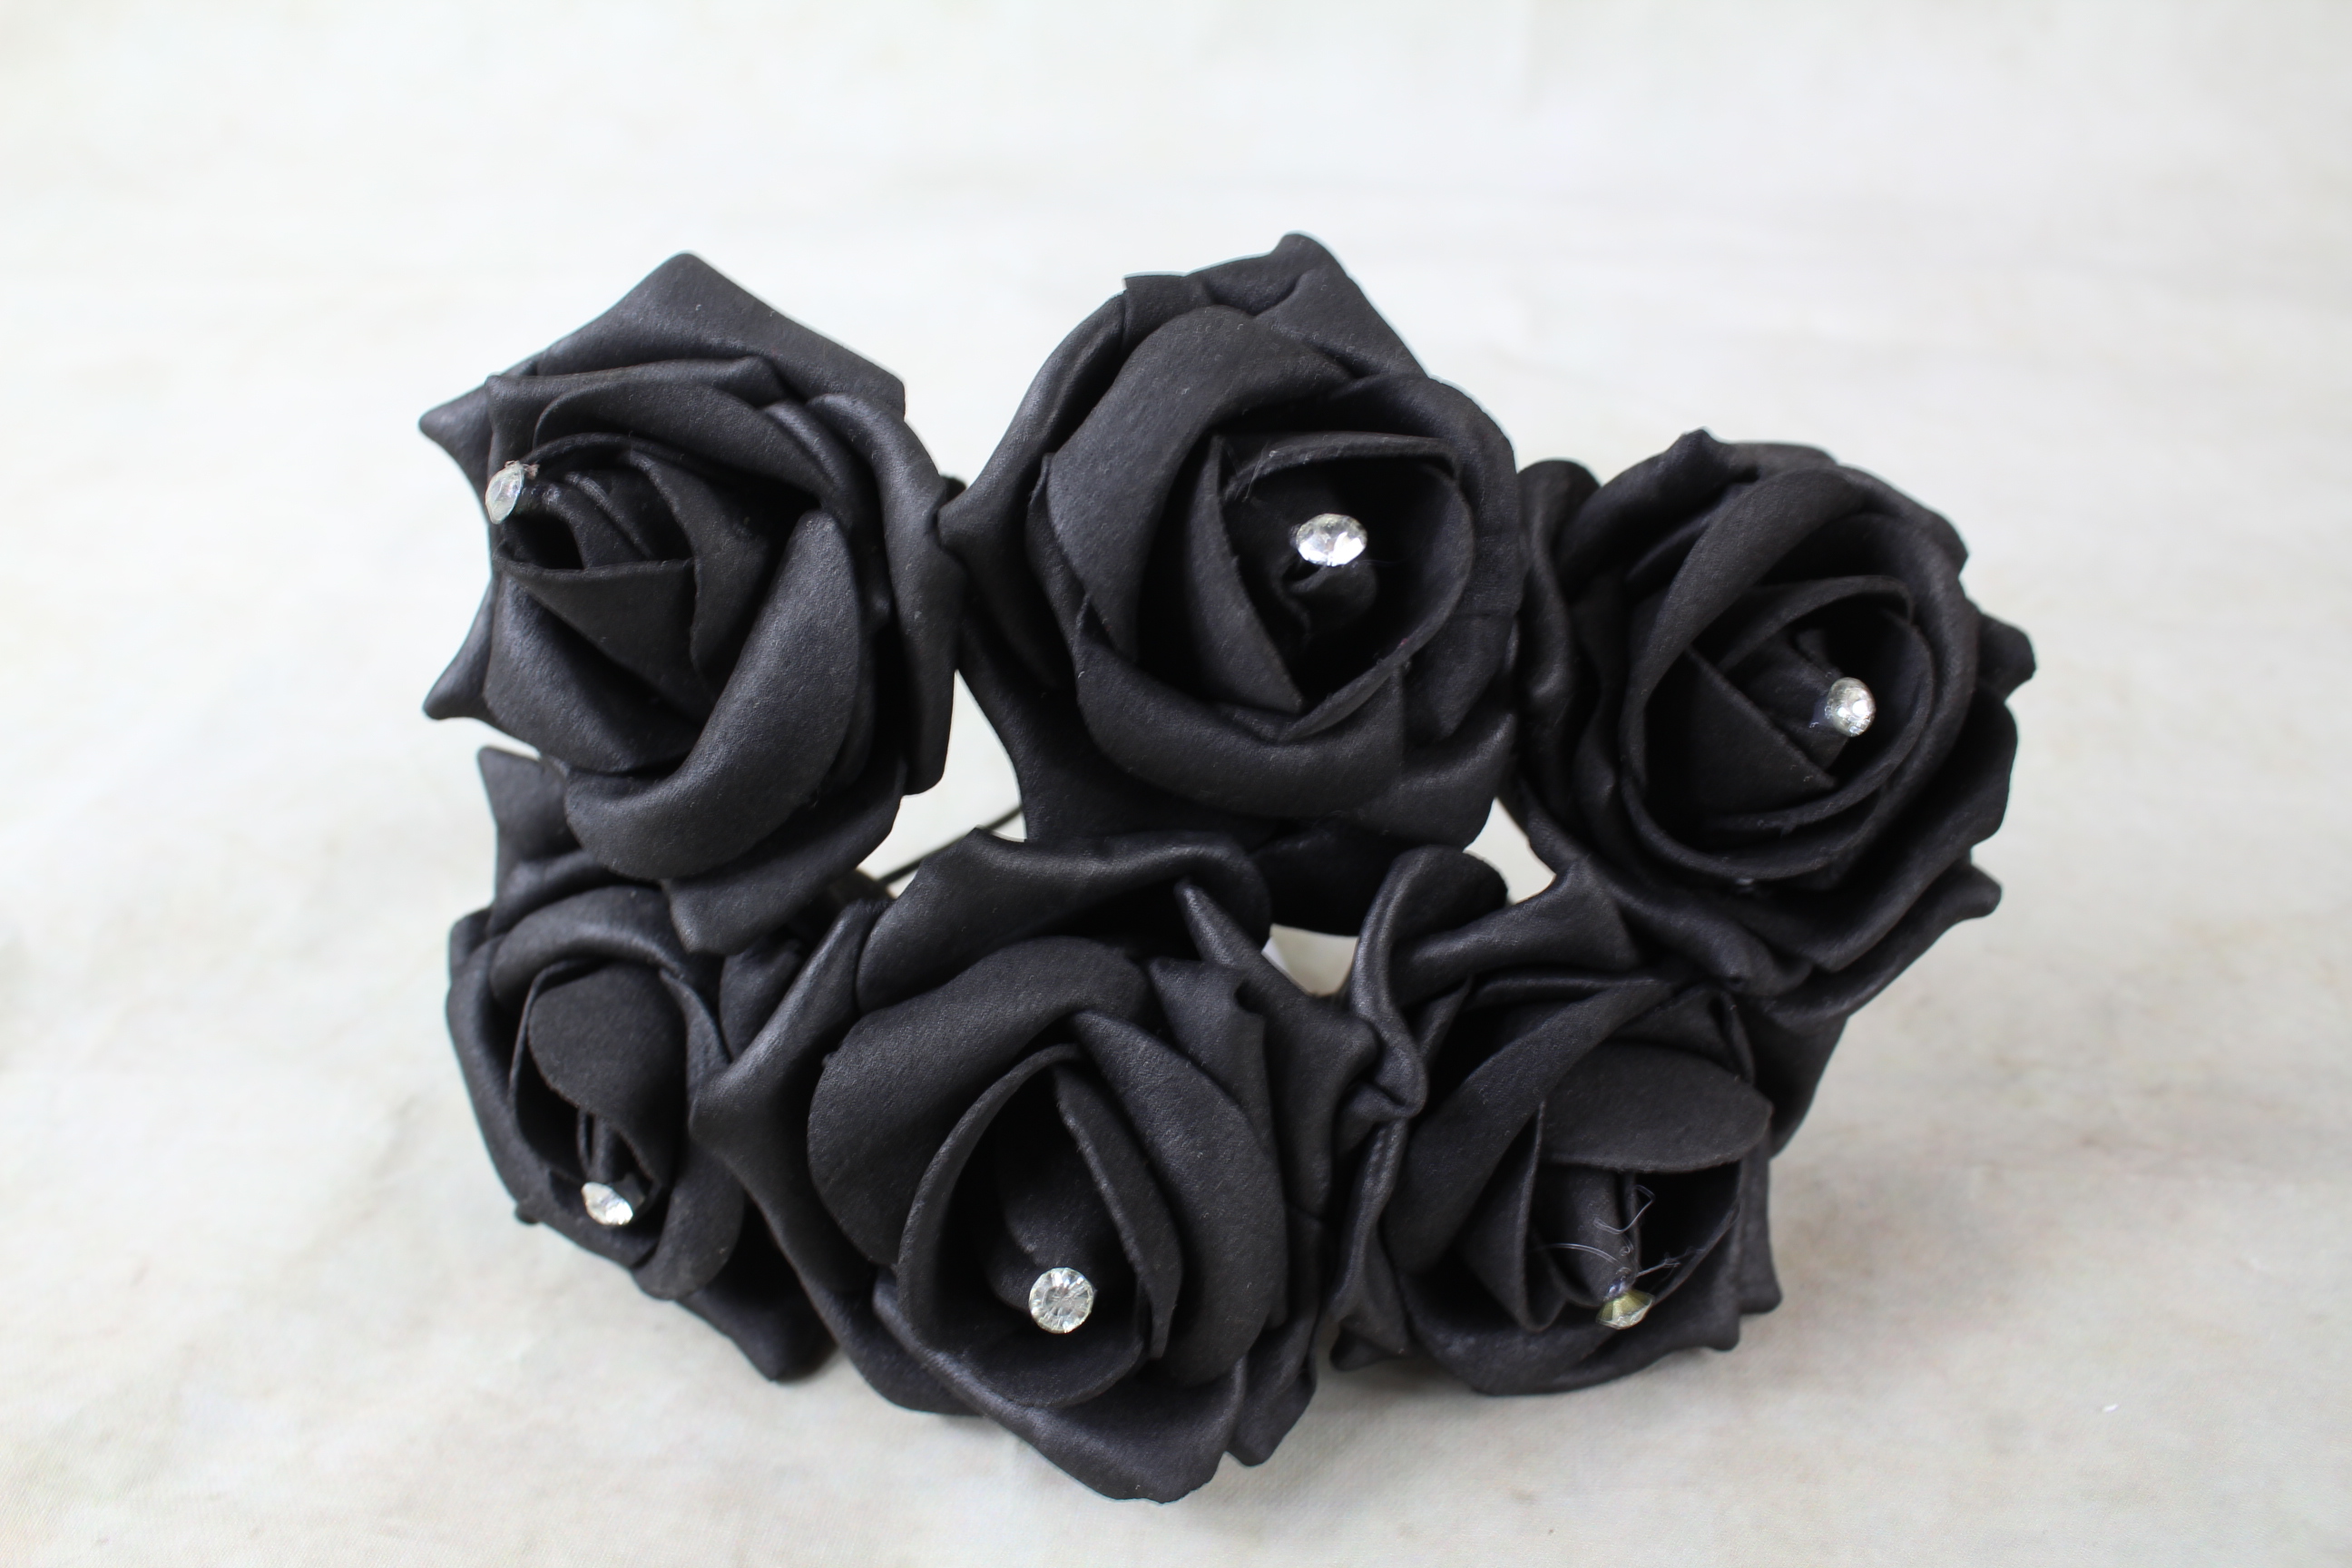 12 x 5.5cm Roses with Diamante centre